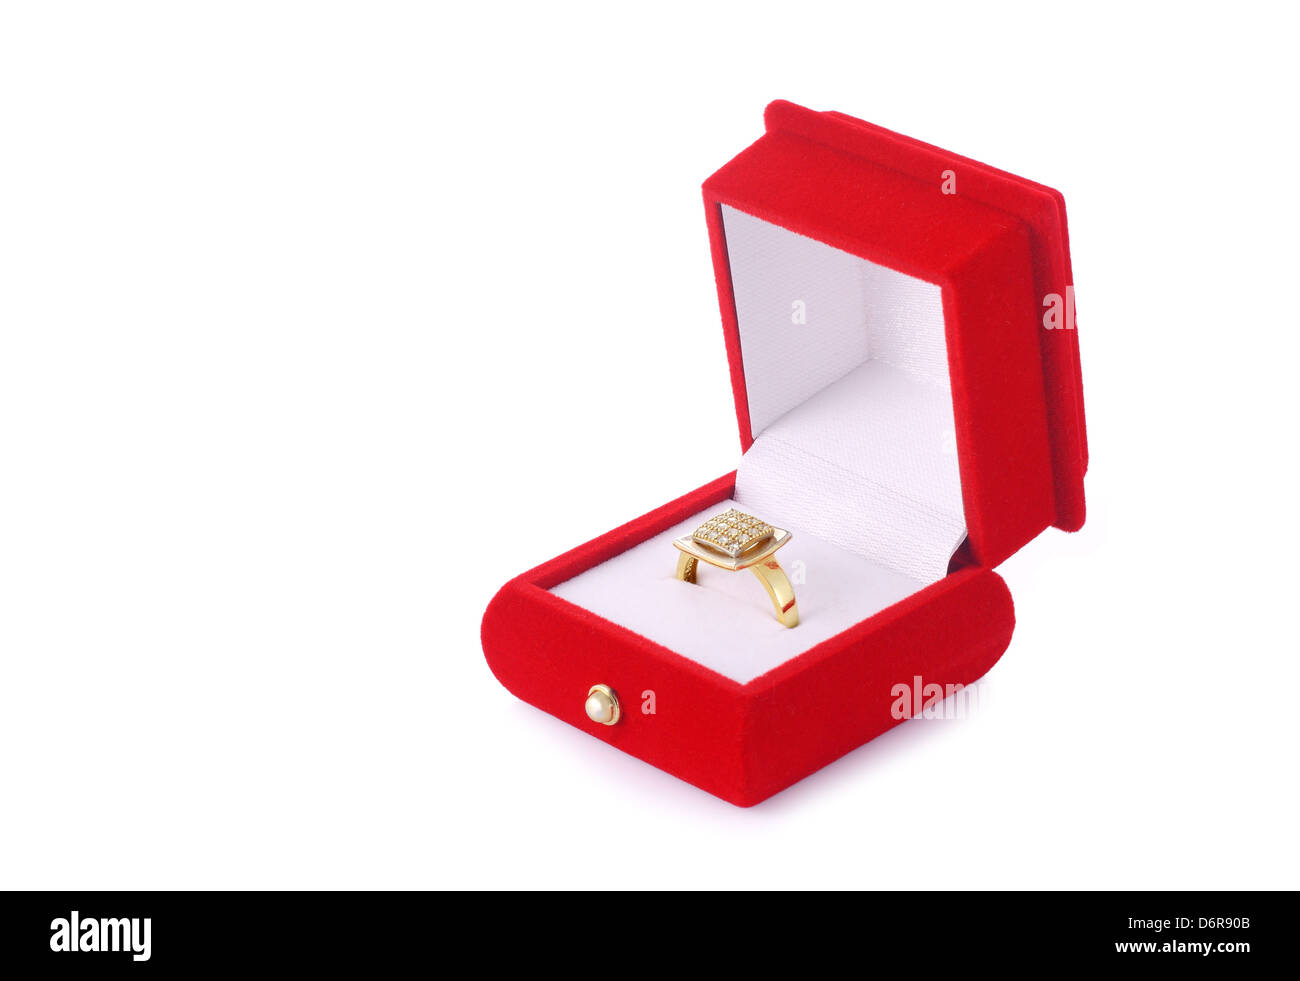 Goldener Ring in einer roten samt-Box isoliert auf weißem Hintergrund Stockfoto